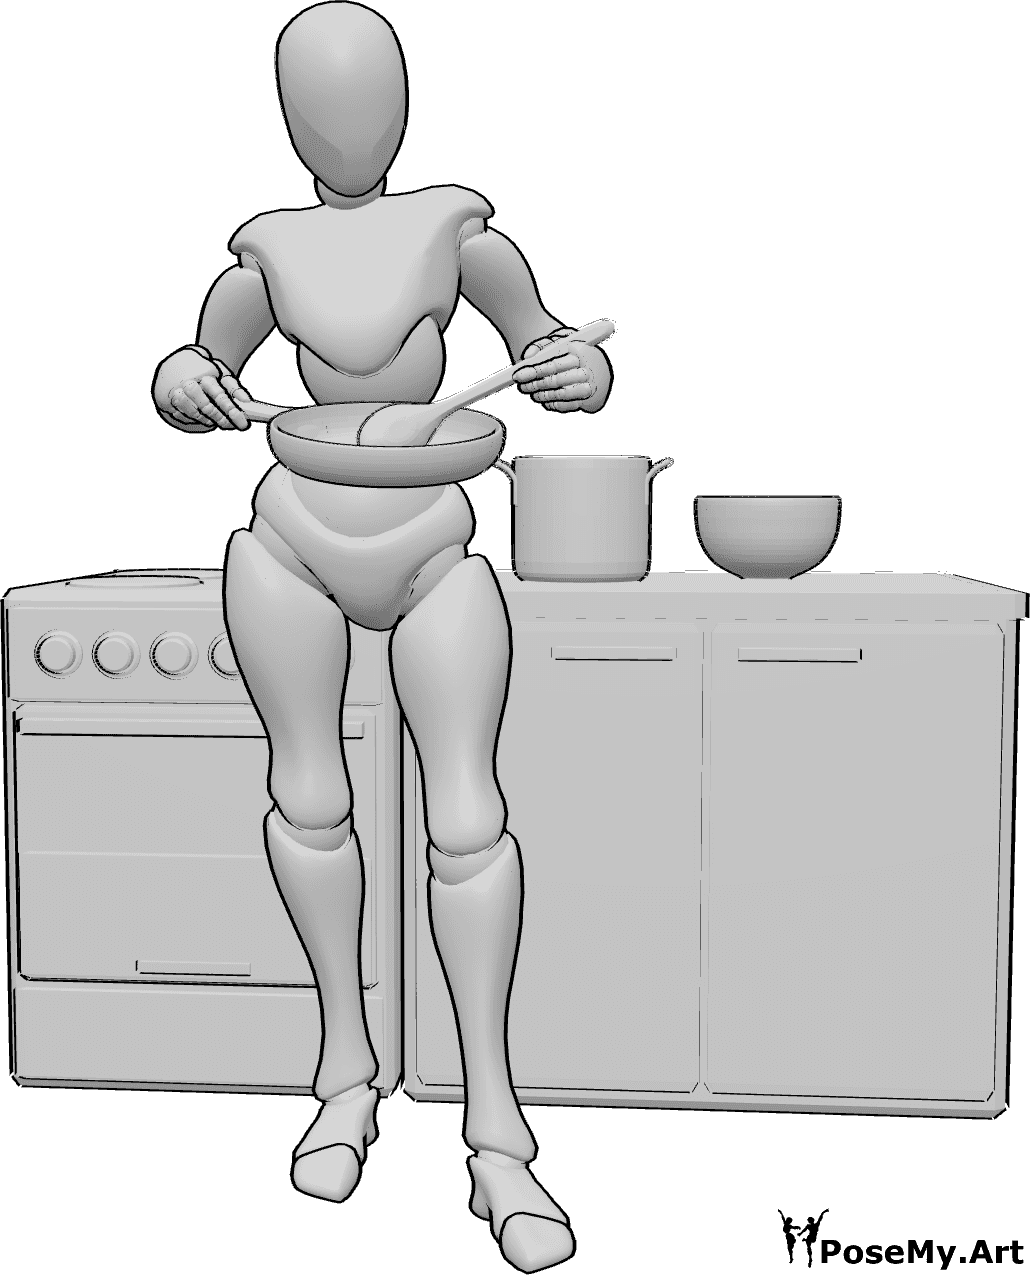 Referencia de poses- Postura de cocina removiendo de pie - Mujer de pie, sosteniendo una sartén en la mano derecha y removiendo con una cuchara de madera en la mano izquierda.